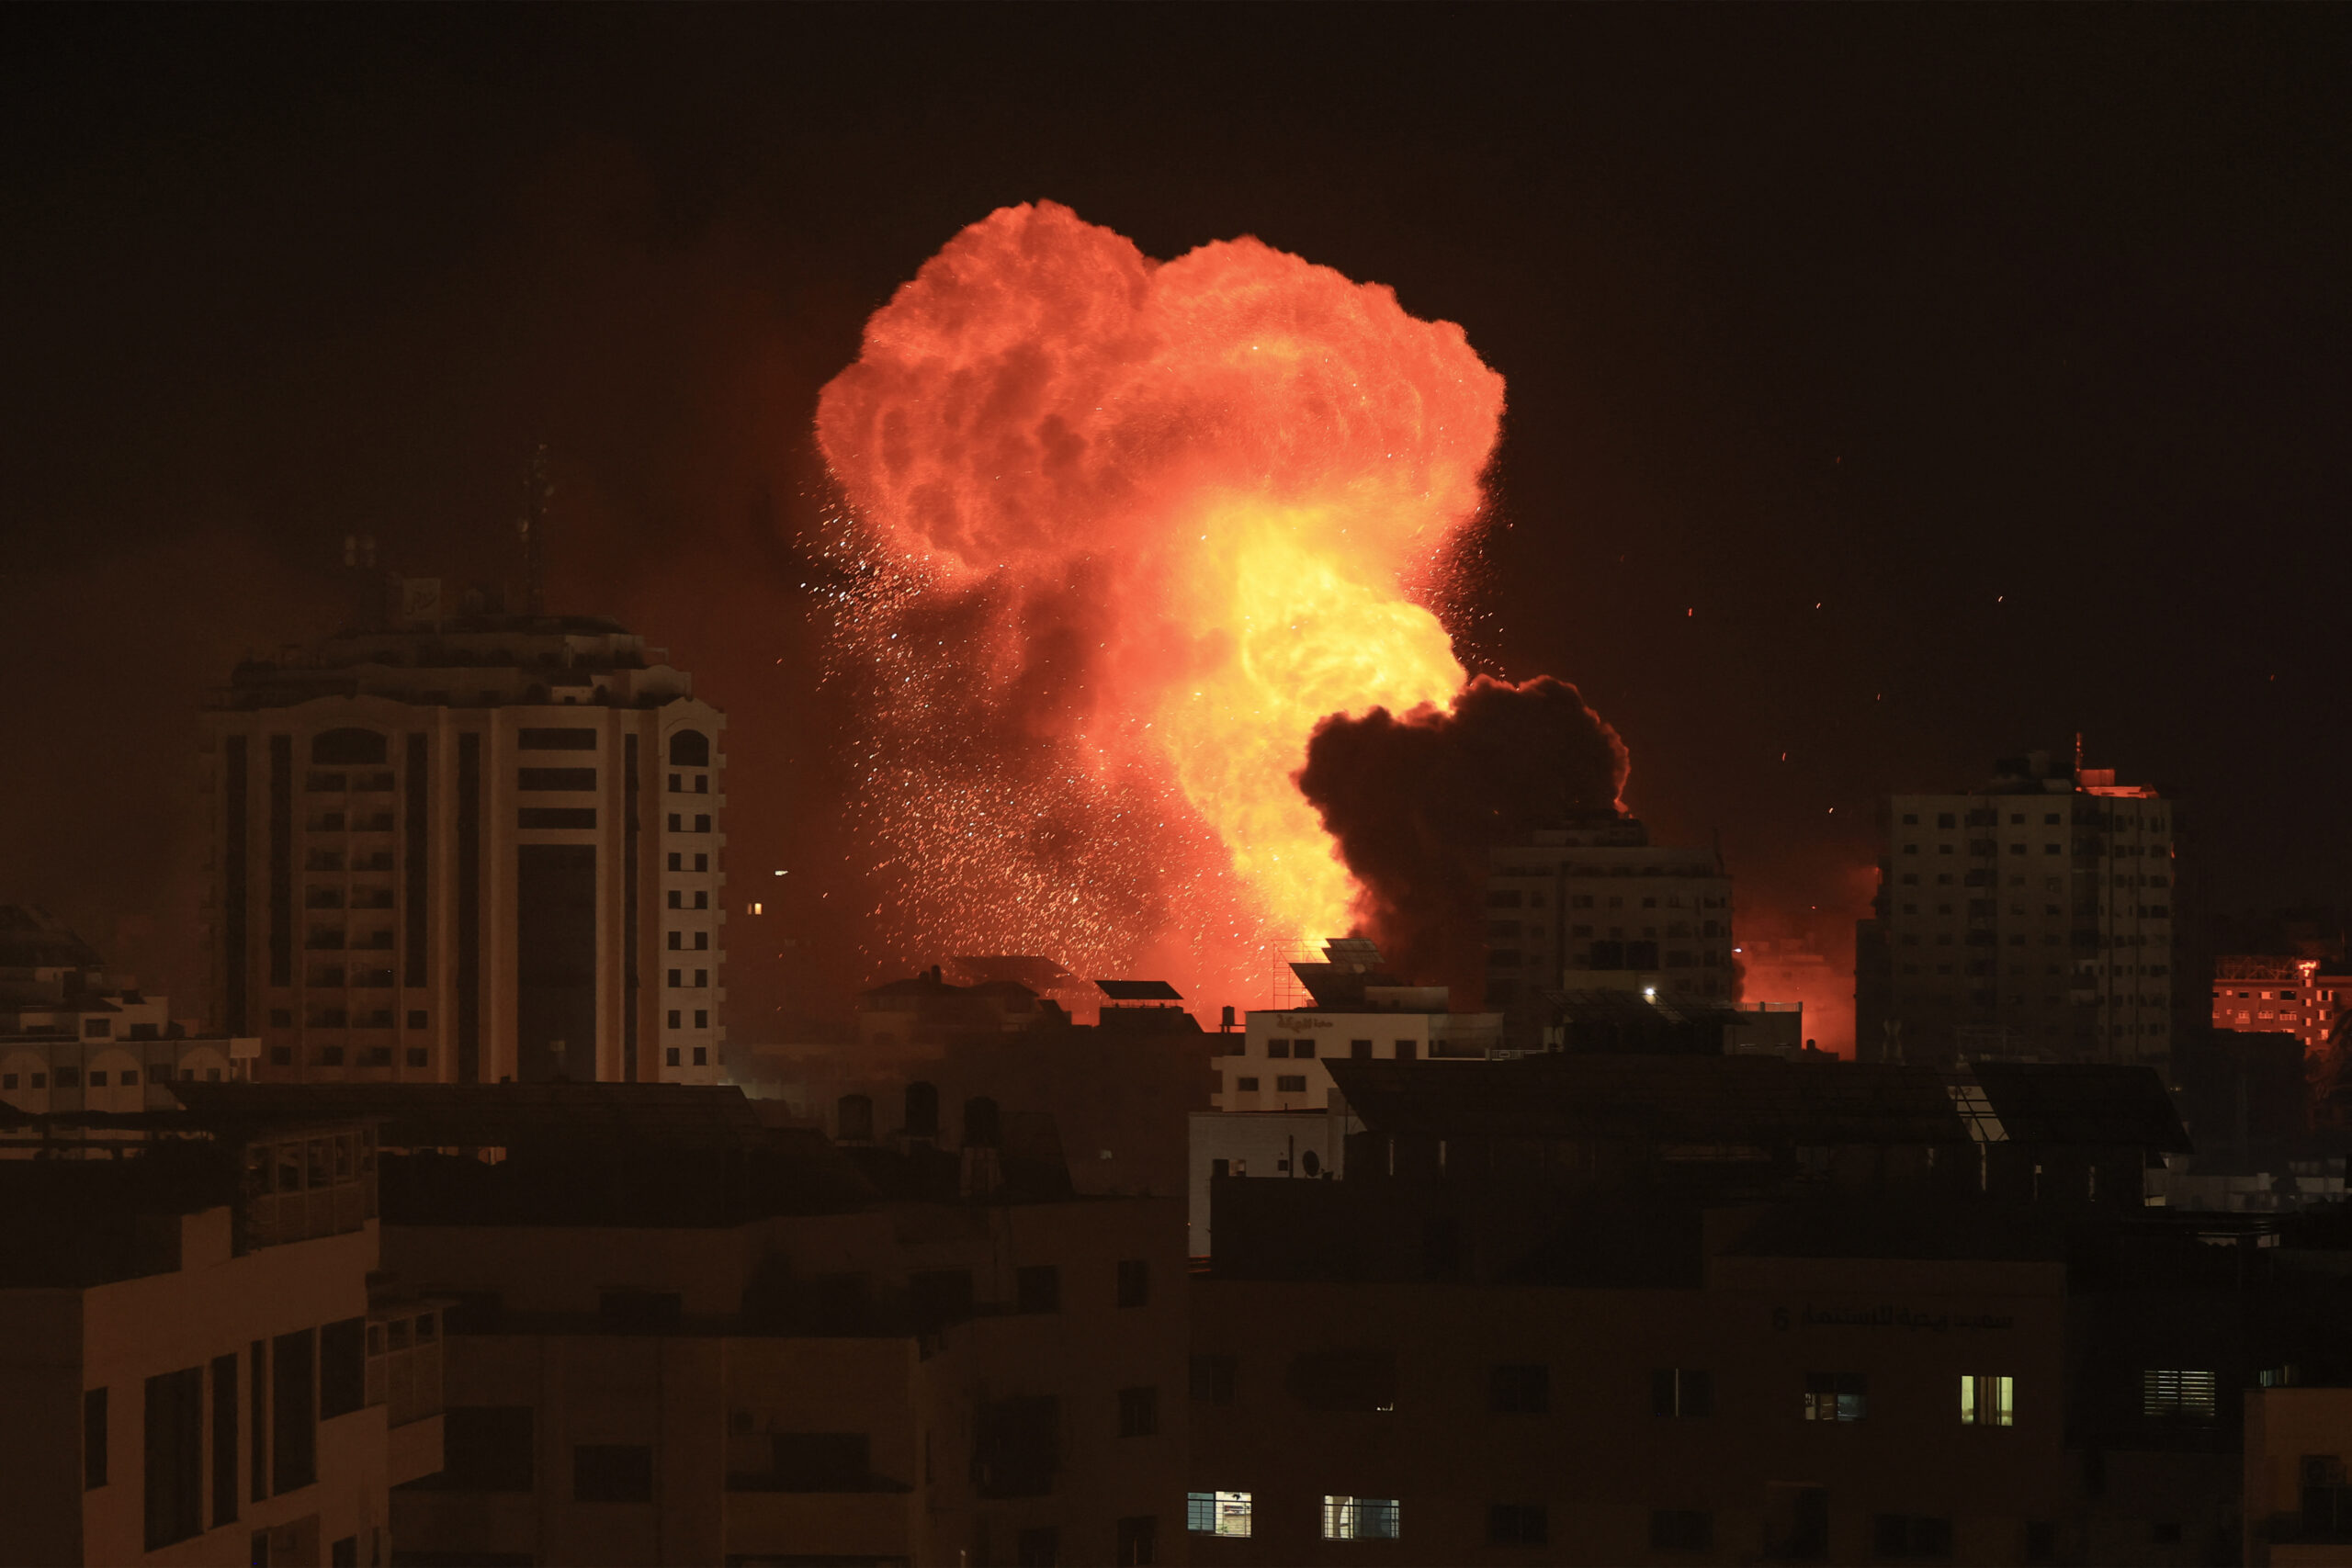 ΟΗΕ: Ο επικεφαλής της ανθρωπιστικής βοήθειας ζητεί την άμεση απελευθέρωση των ομήρων στον πόλεμο μεταξύ Ισραήλ και Χαμάς